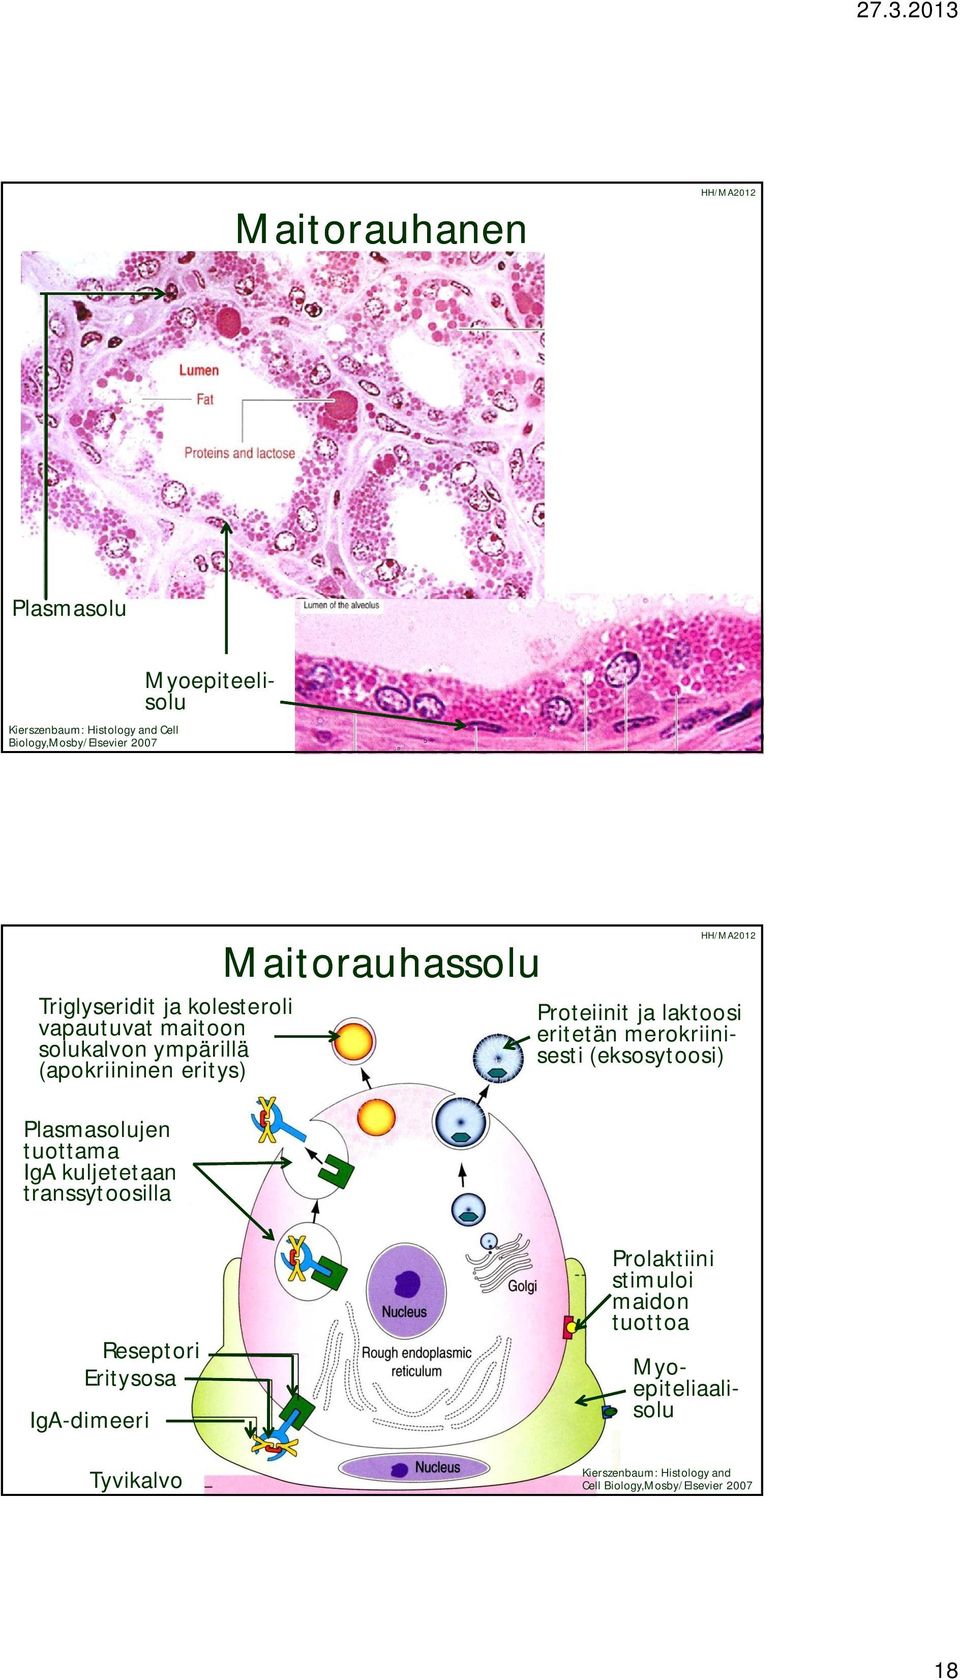 Maitorauhassolu Proteiinit ja laktoosi eritetän merokriinisesti (eksosytoosi) Reseptori Eritysosa IgA-dimeeri